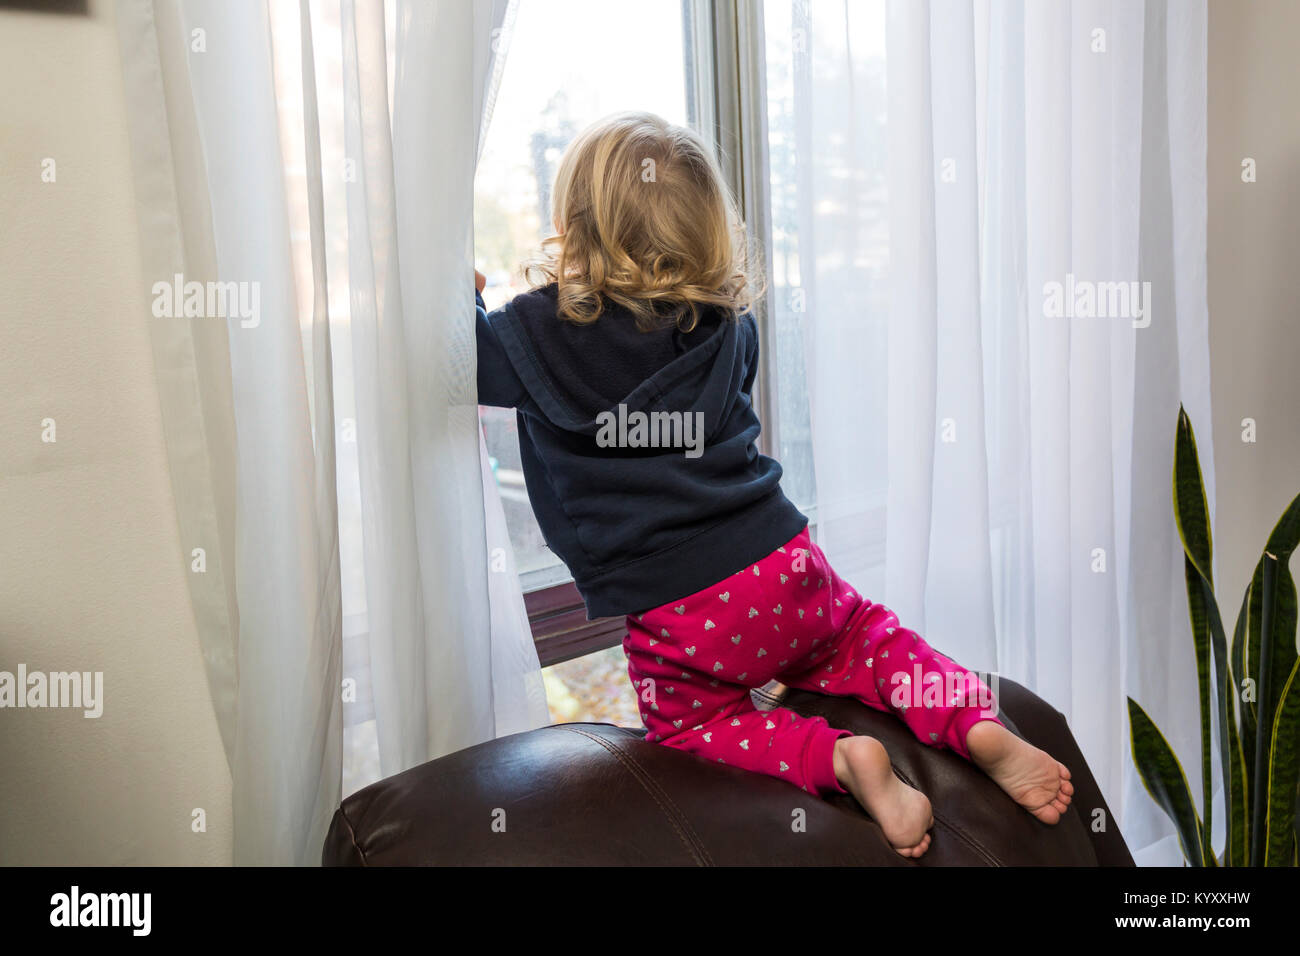 Niño de 2 años, mirando por la ventana en riesgo de caer en una silla después de subir Foto de stock